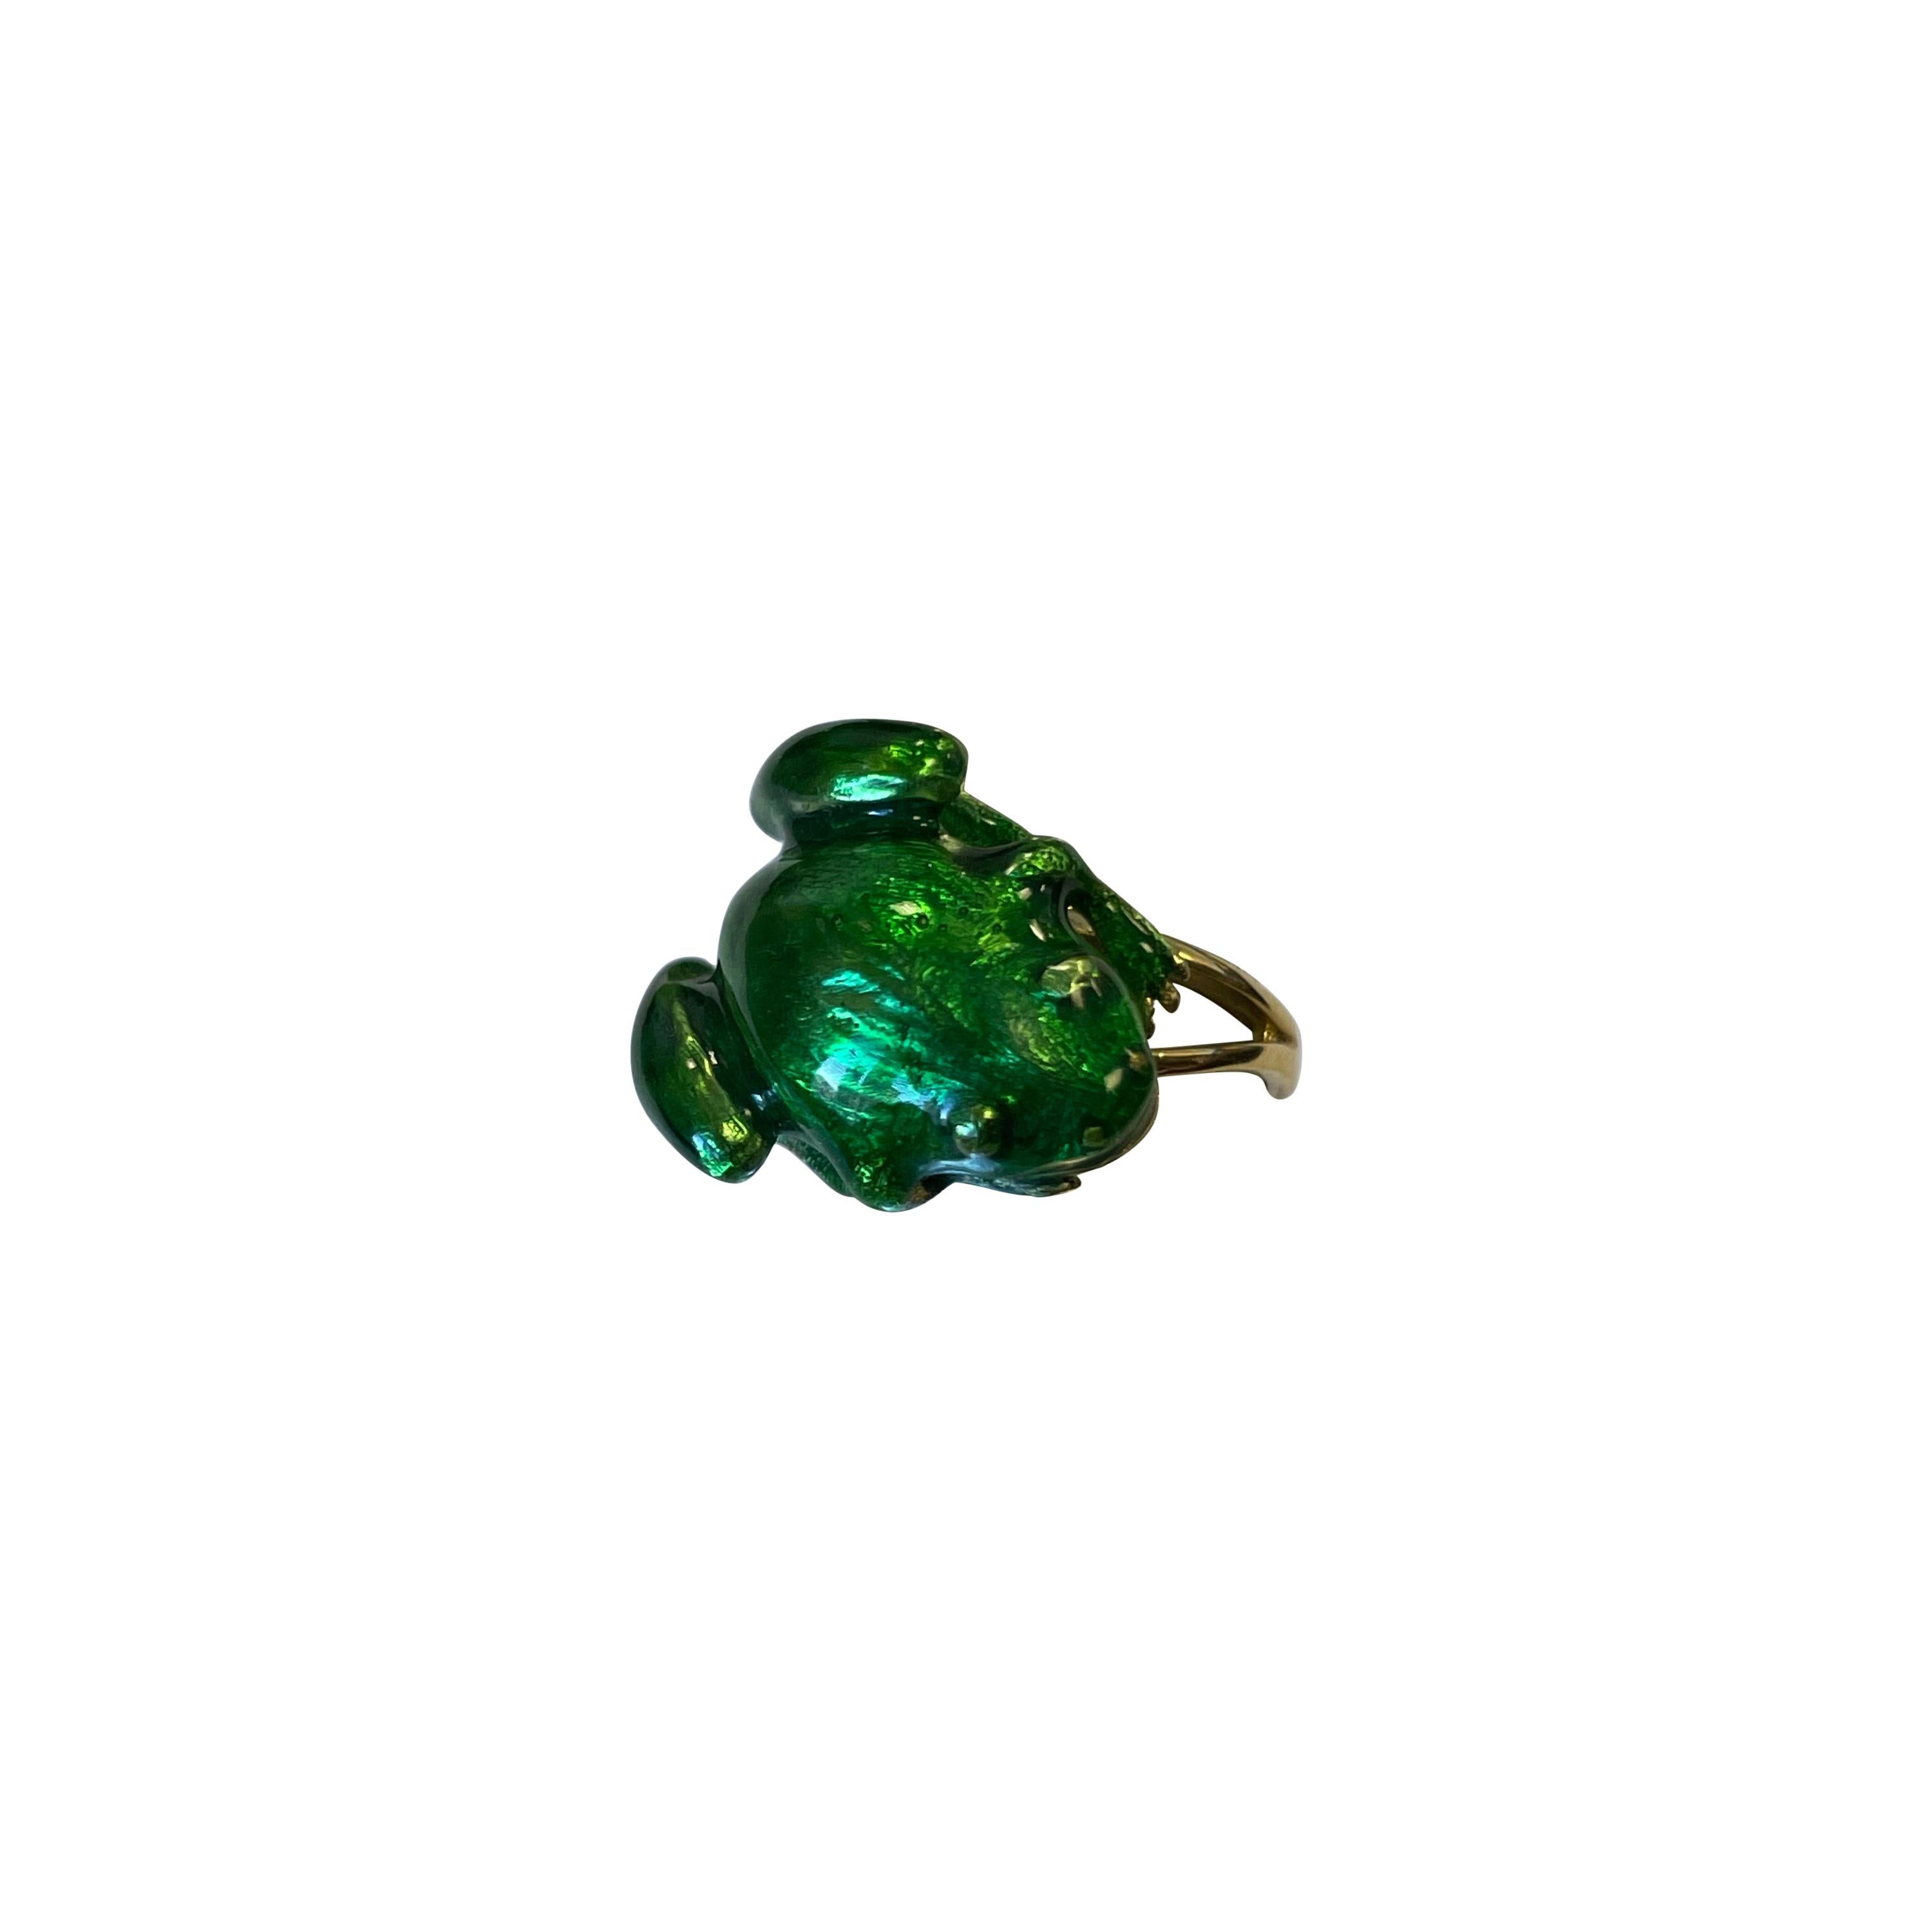 18 Karat Yellow Gold Ring with Green Enamel Frog